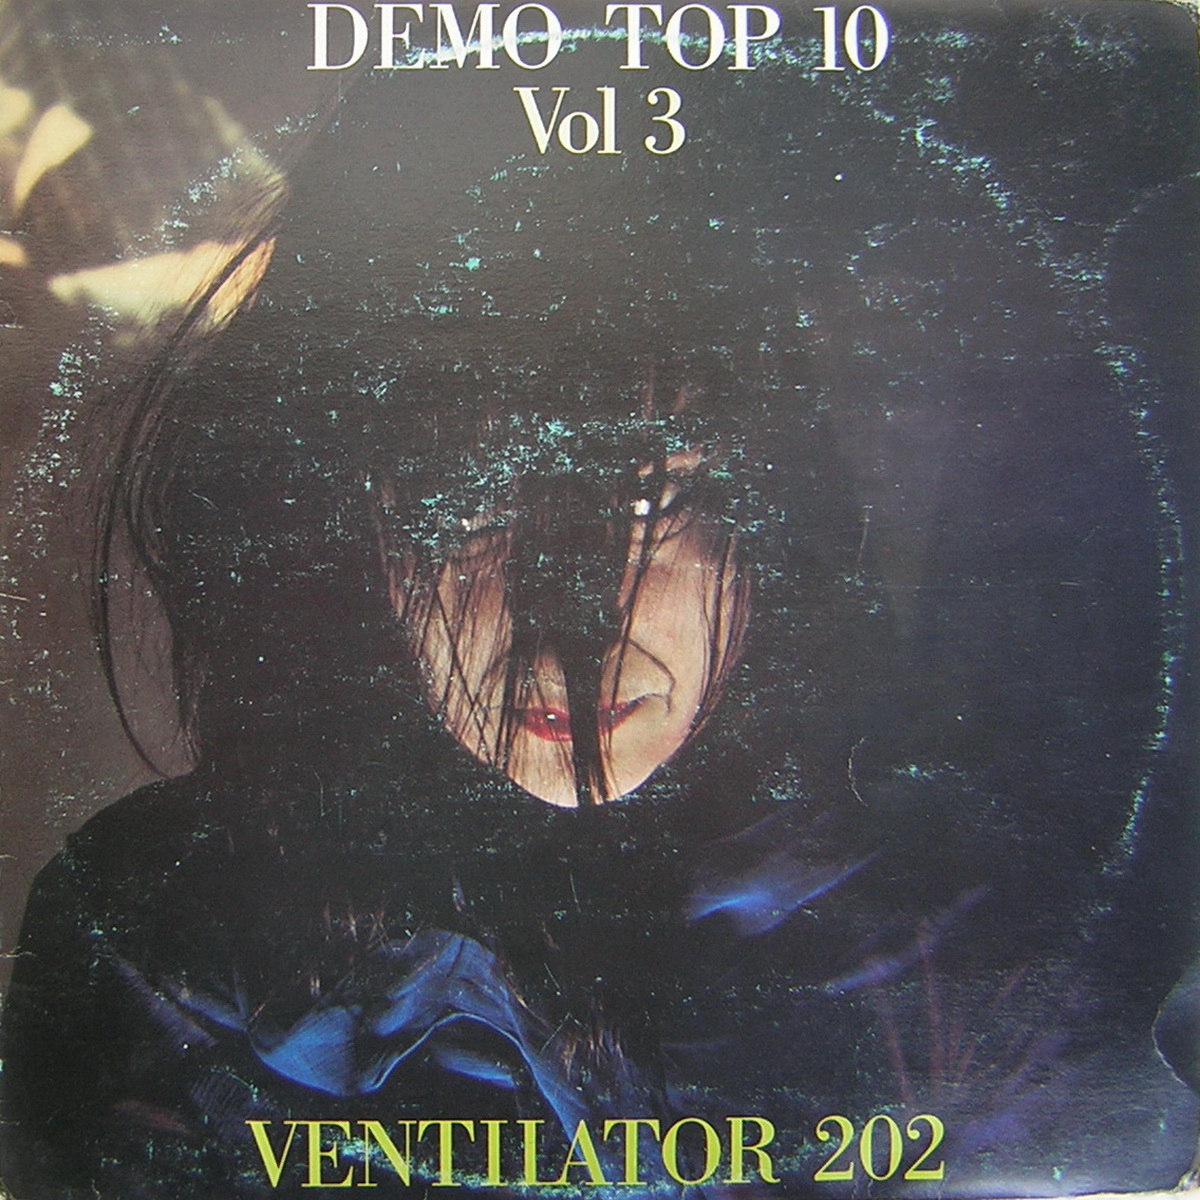 Ventilator 202 1985 Demo Top 10 Vol 3 a